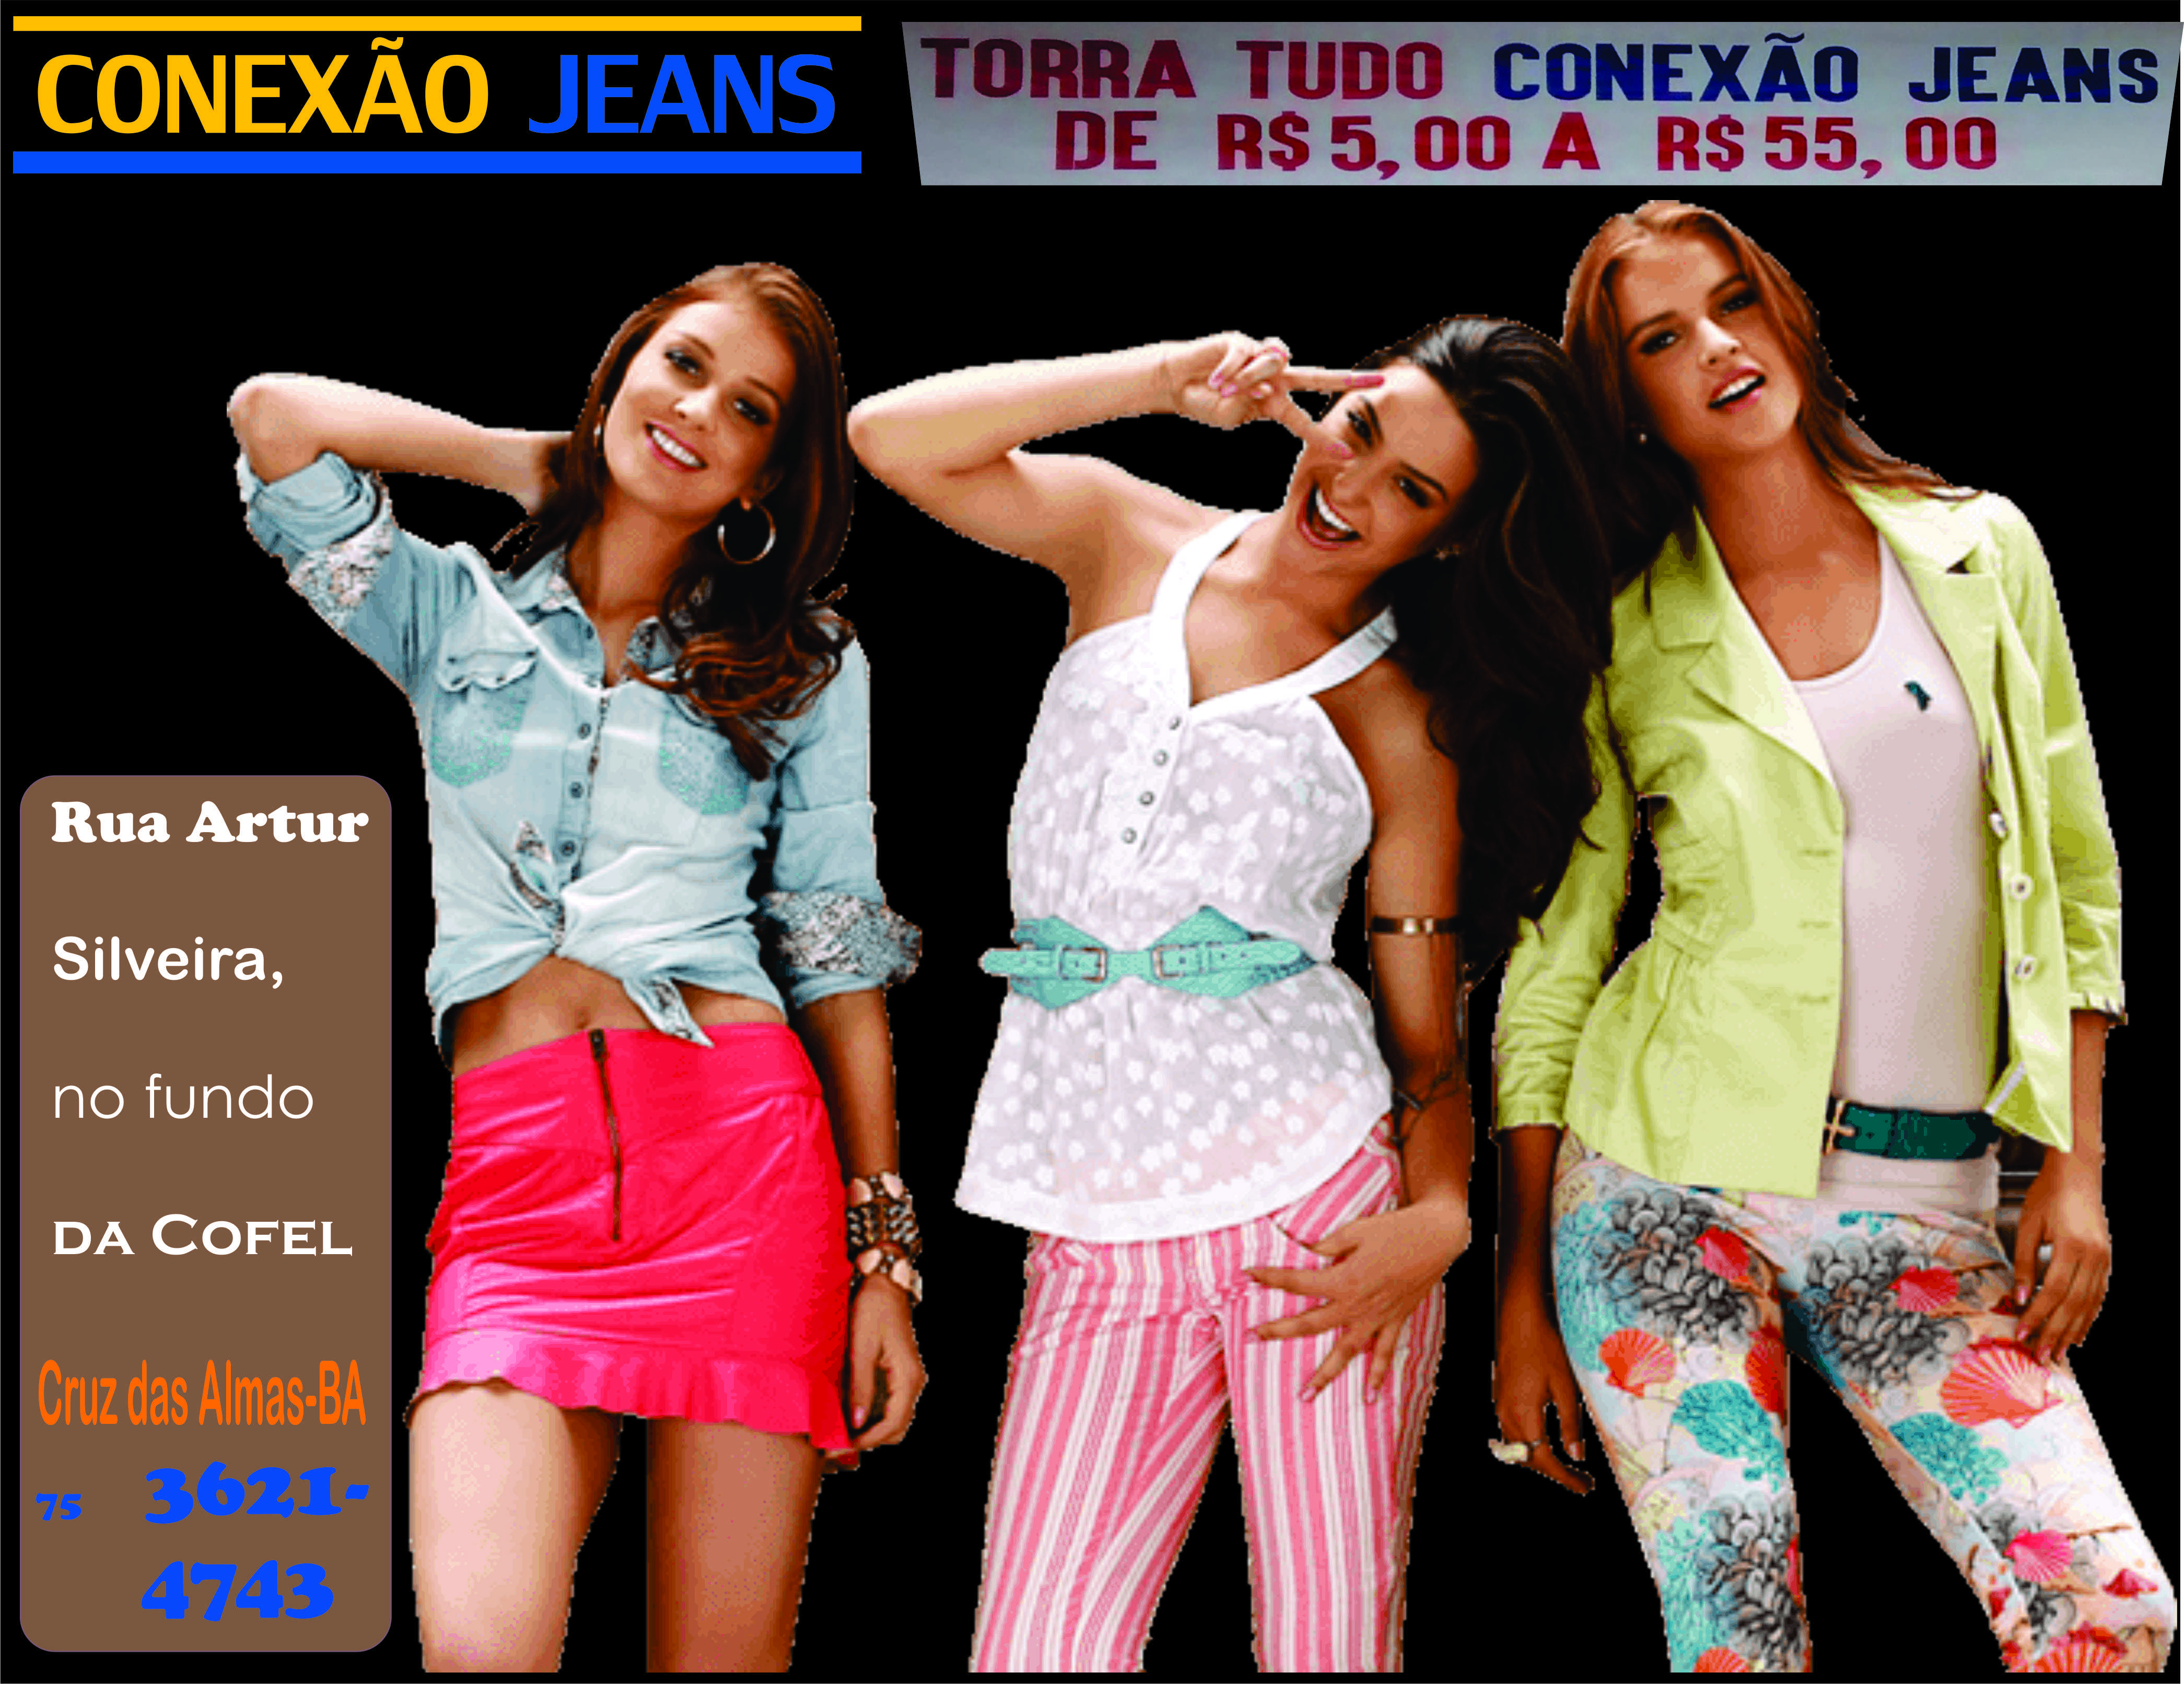 Photo of Conexão Jeans: Torra tudo !